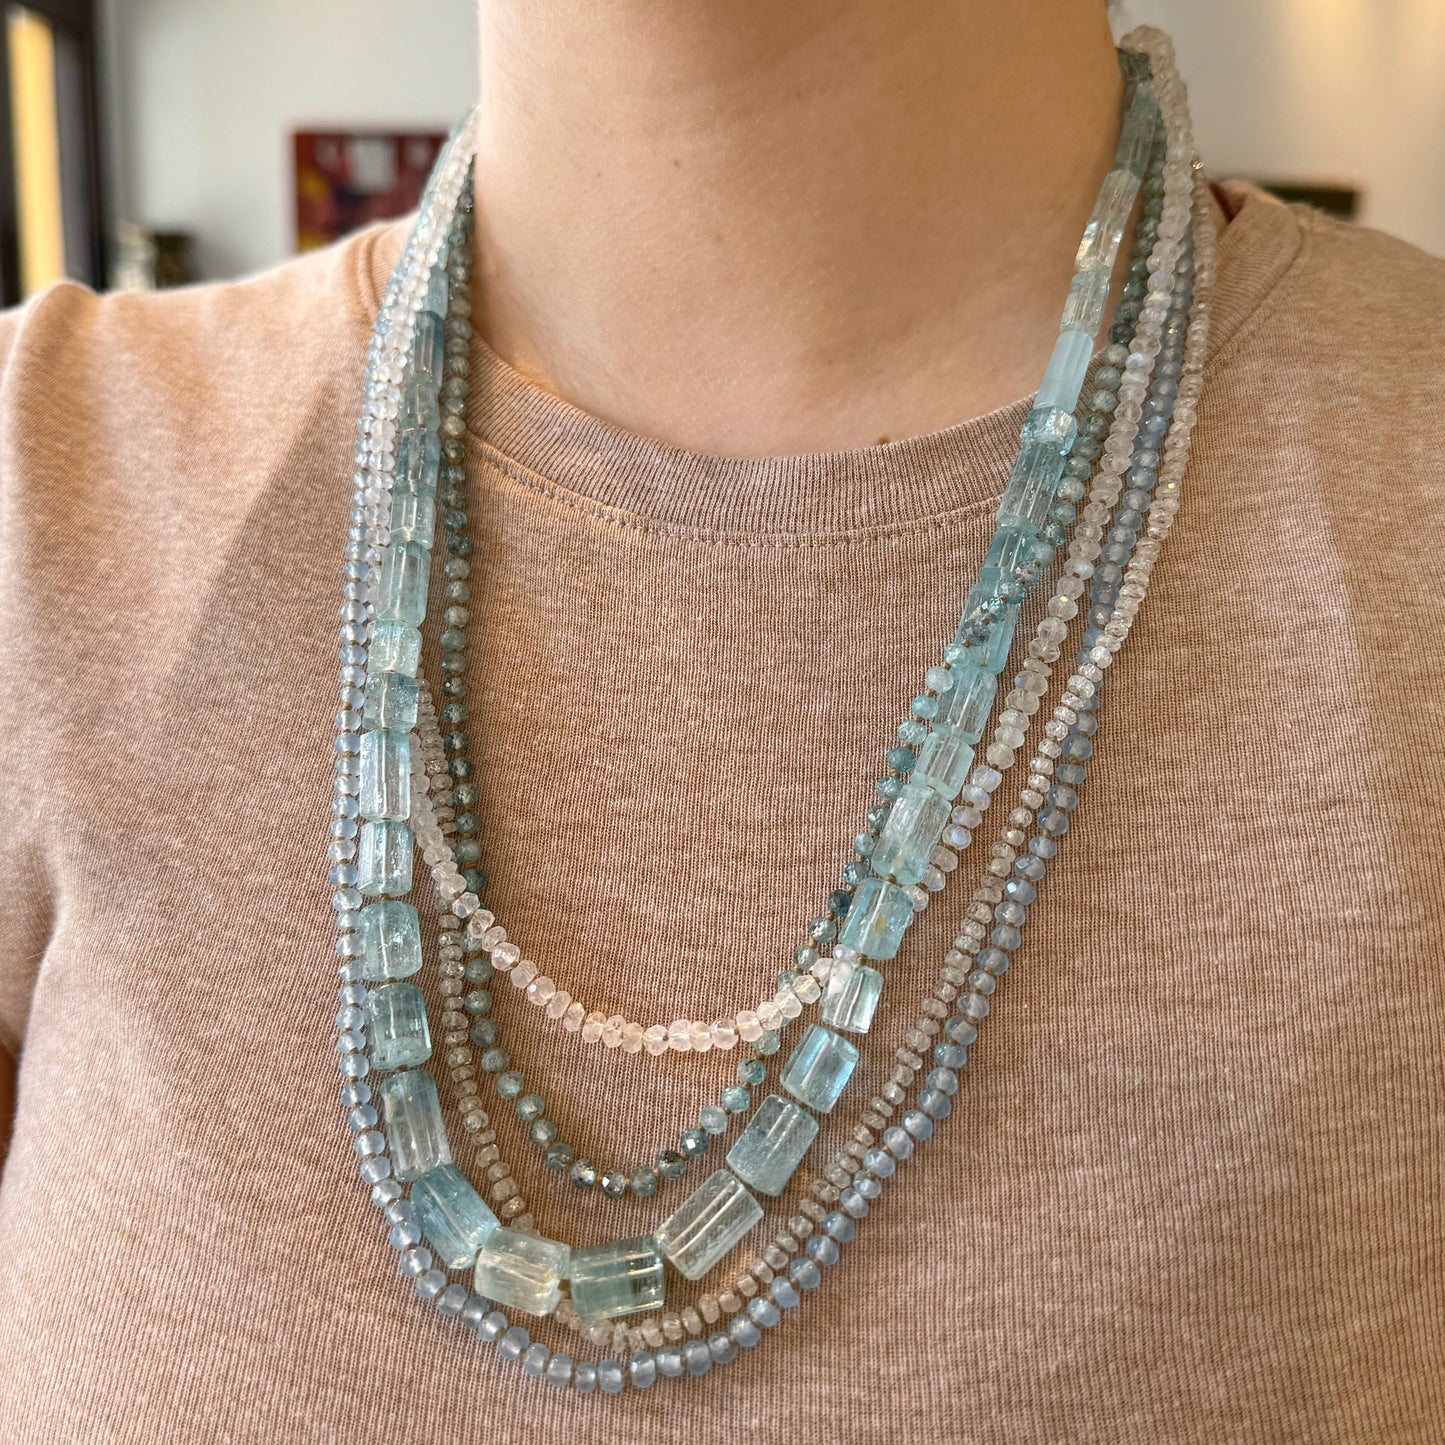 Aquamarine & Moonstone Beaded Necklace